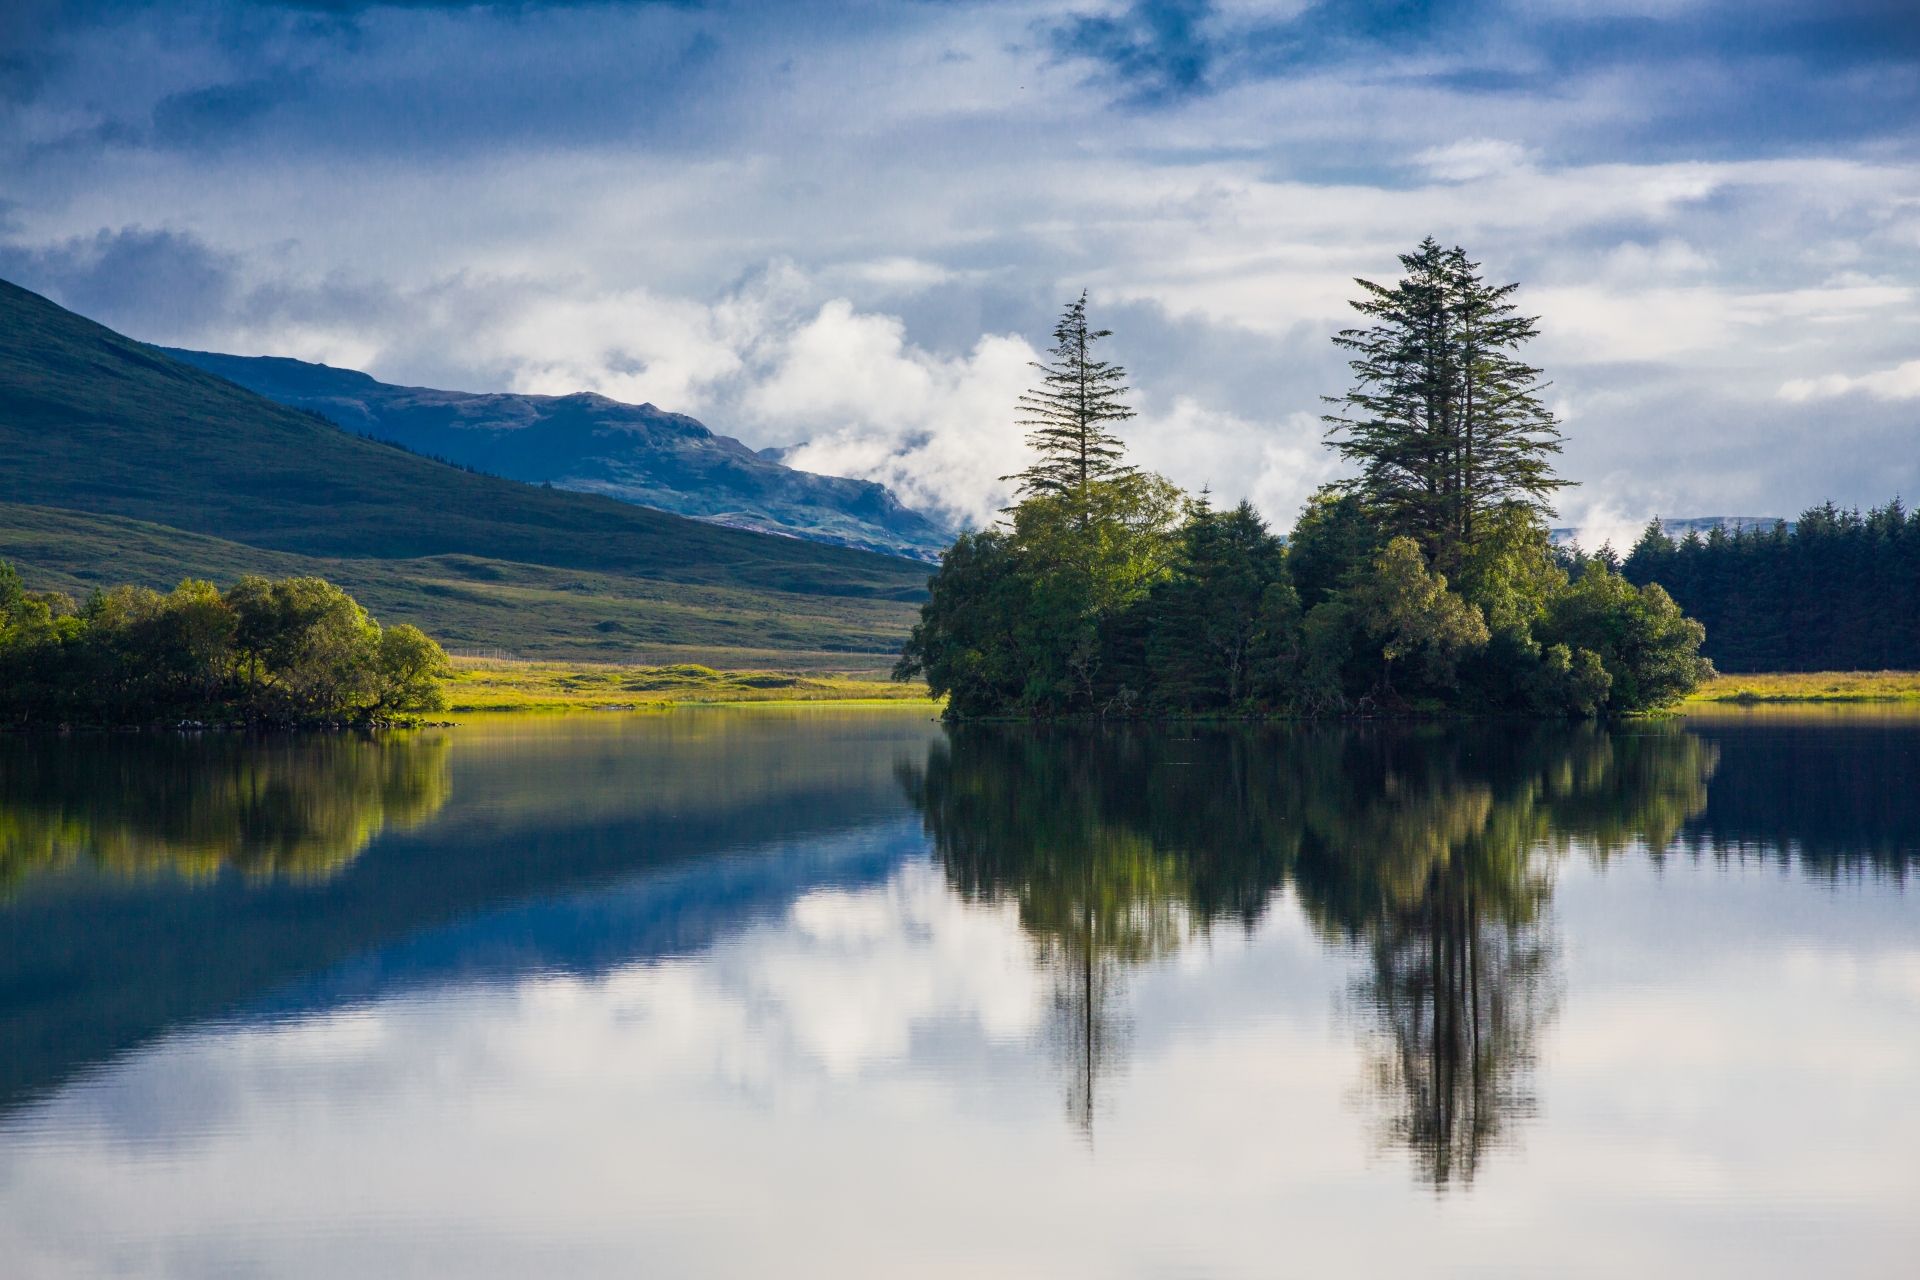 A calm lake or loch